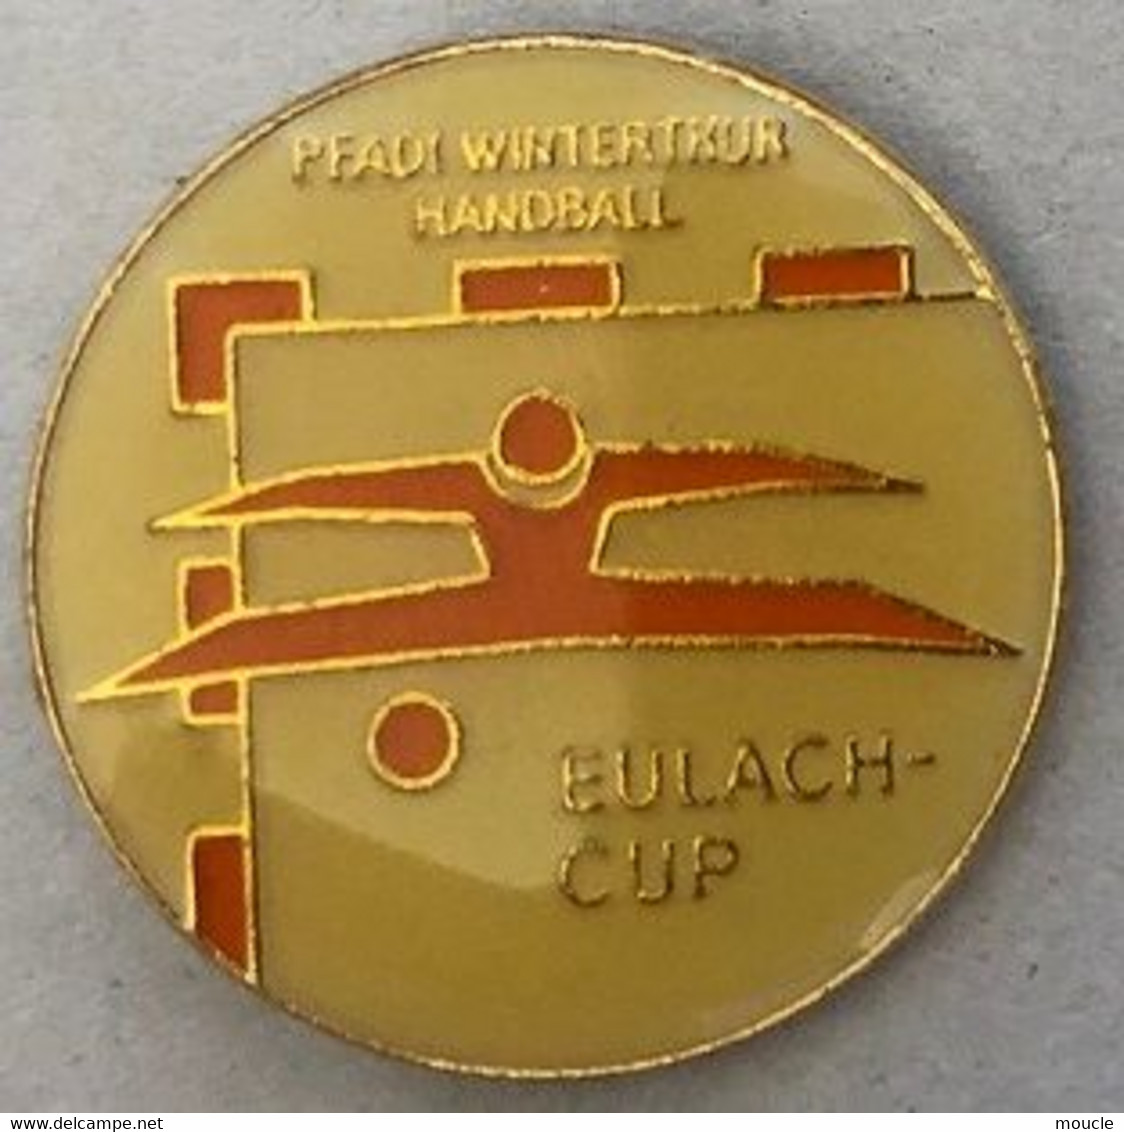 PFADI WINTERTHUR HANDBALL - WINTERTHOUR - CANTON DE ZURICH - SUISSE - SCHWEIZ - SWITZERLAND - EULACH CUP -  (27) - Handball